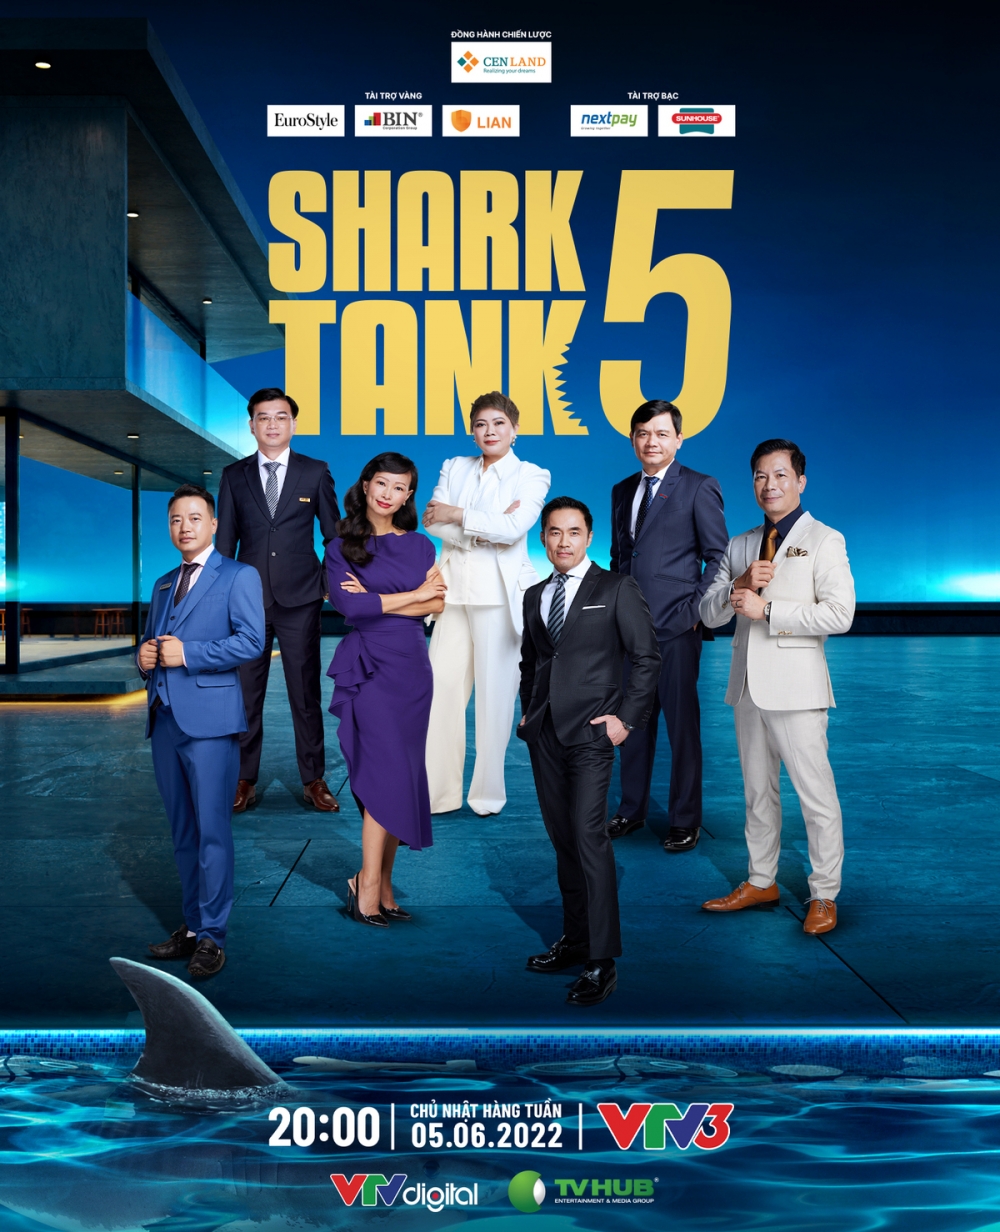 Shark Linh: Từ không ai hay biết đến nổi danh sau Thương vụ bạc tỷ